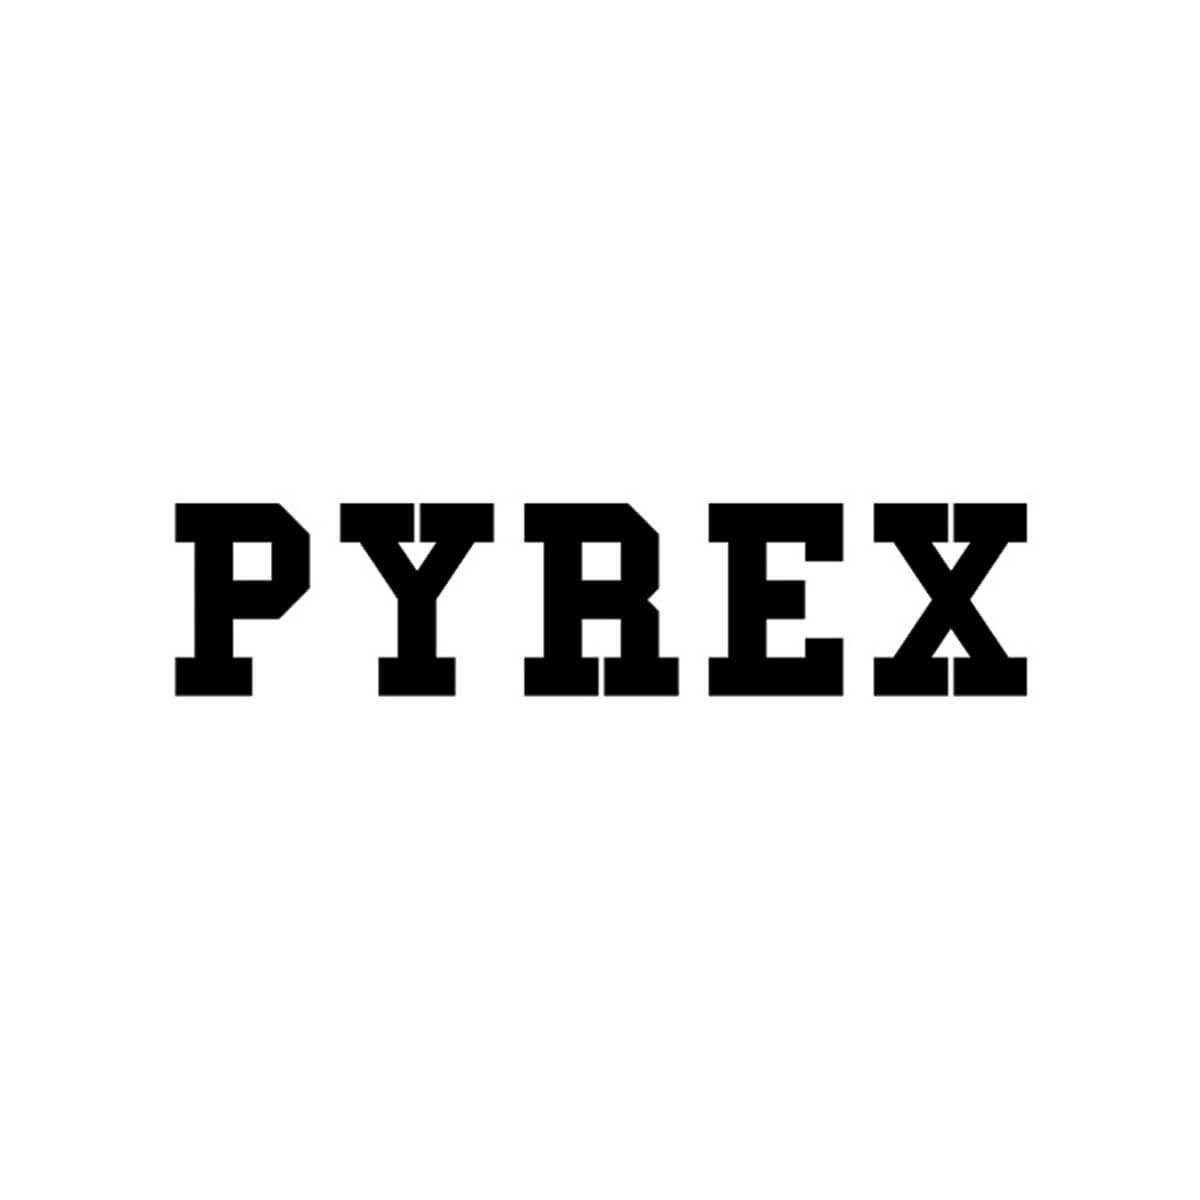 pyrex